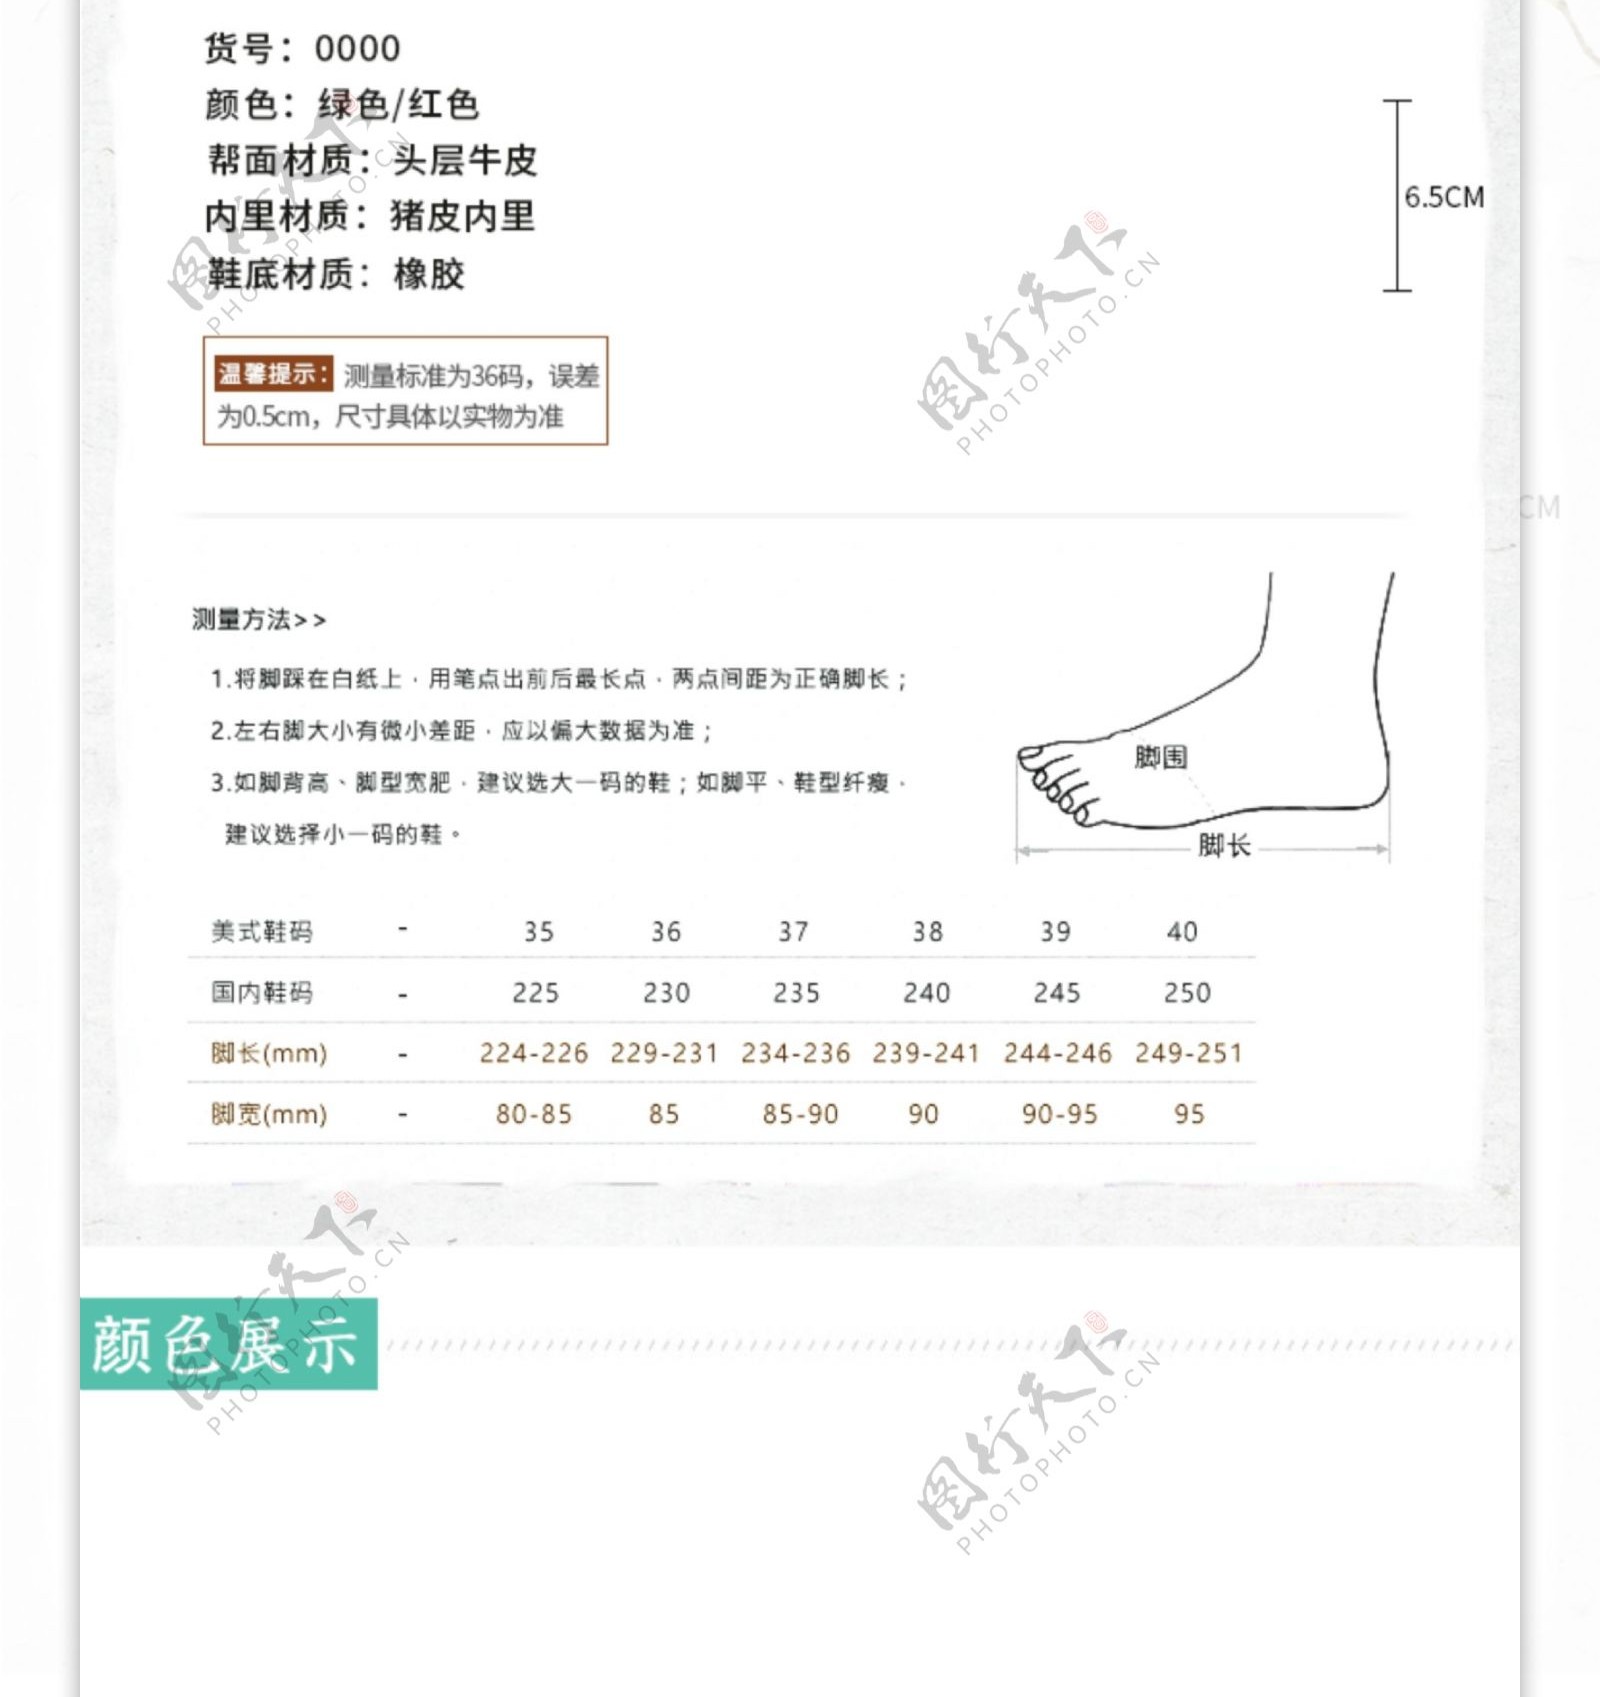 中国风女性鞋子详情电商模版